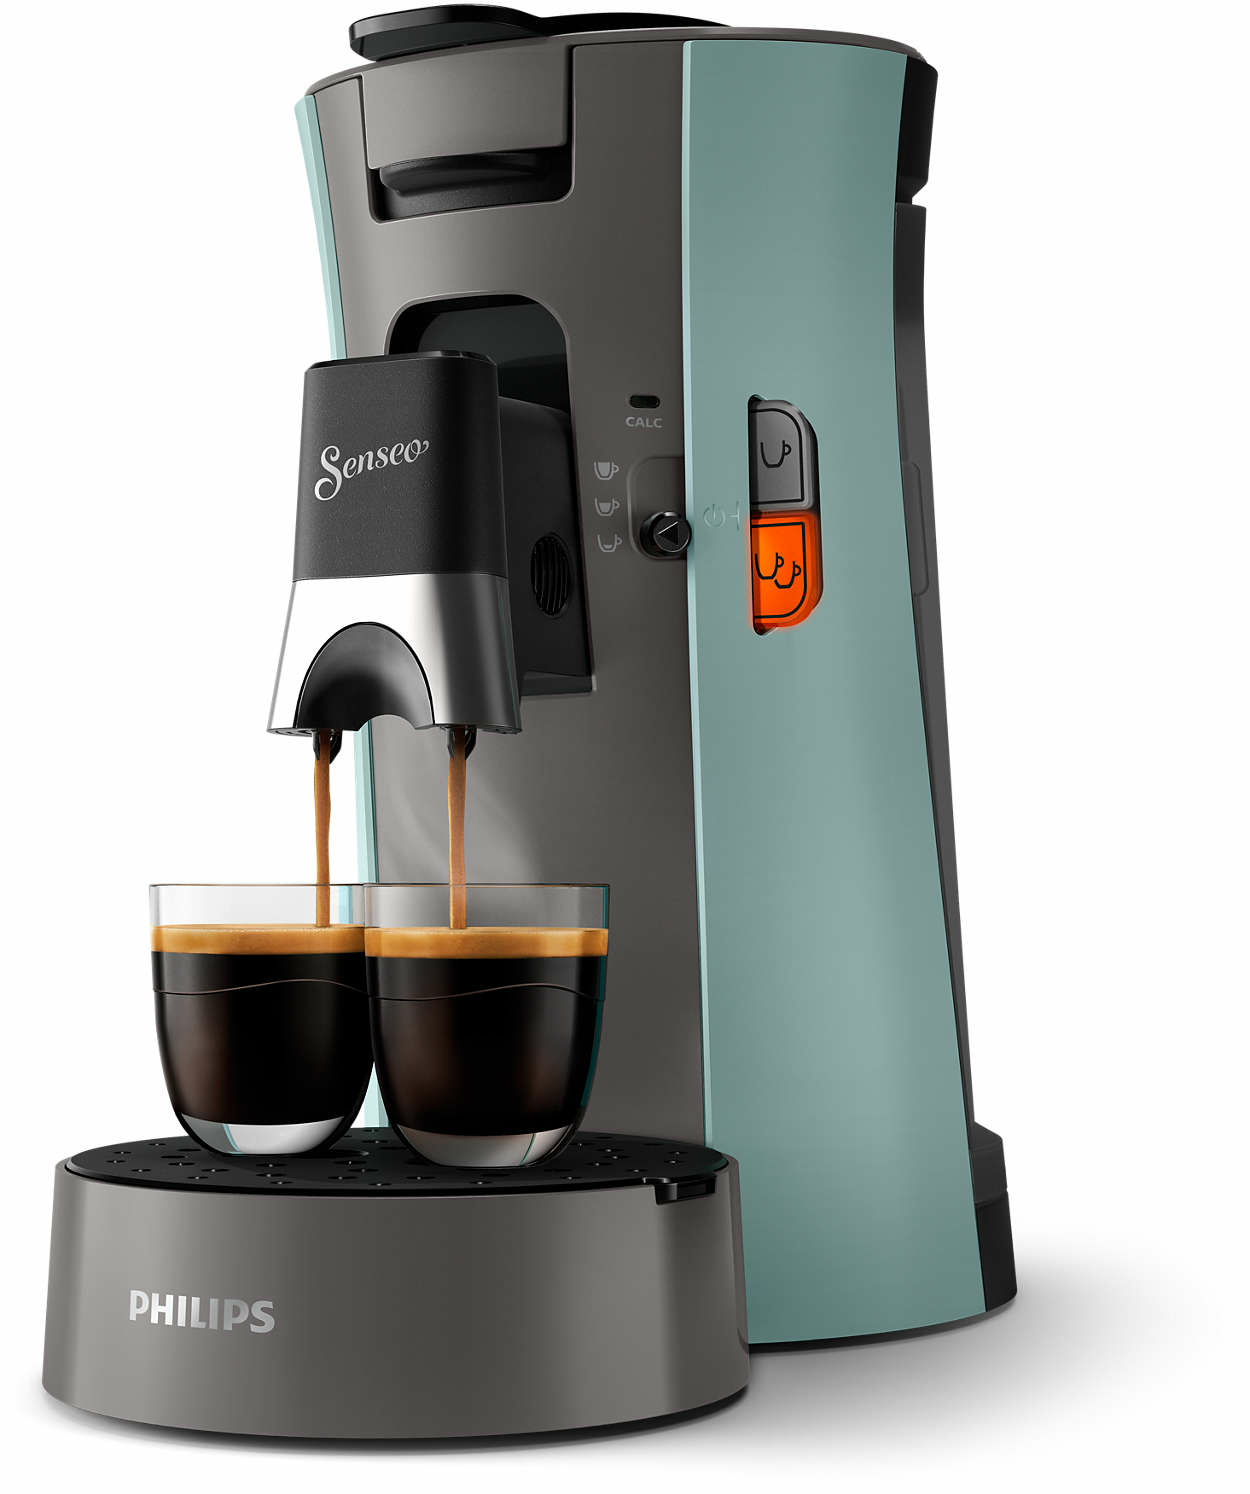 Philips by Versuni CSA230/10 coffee maker